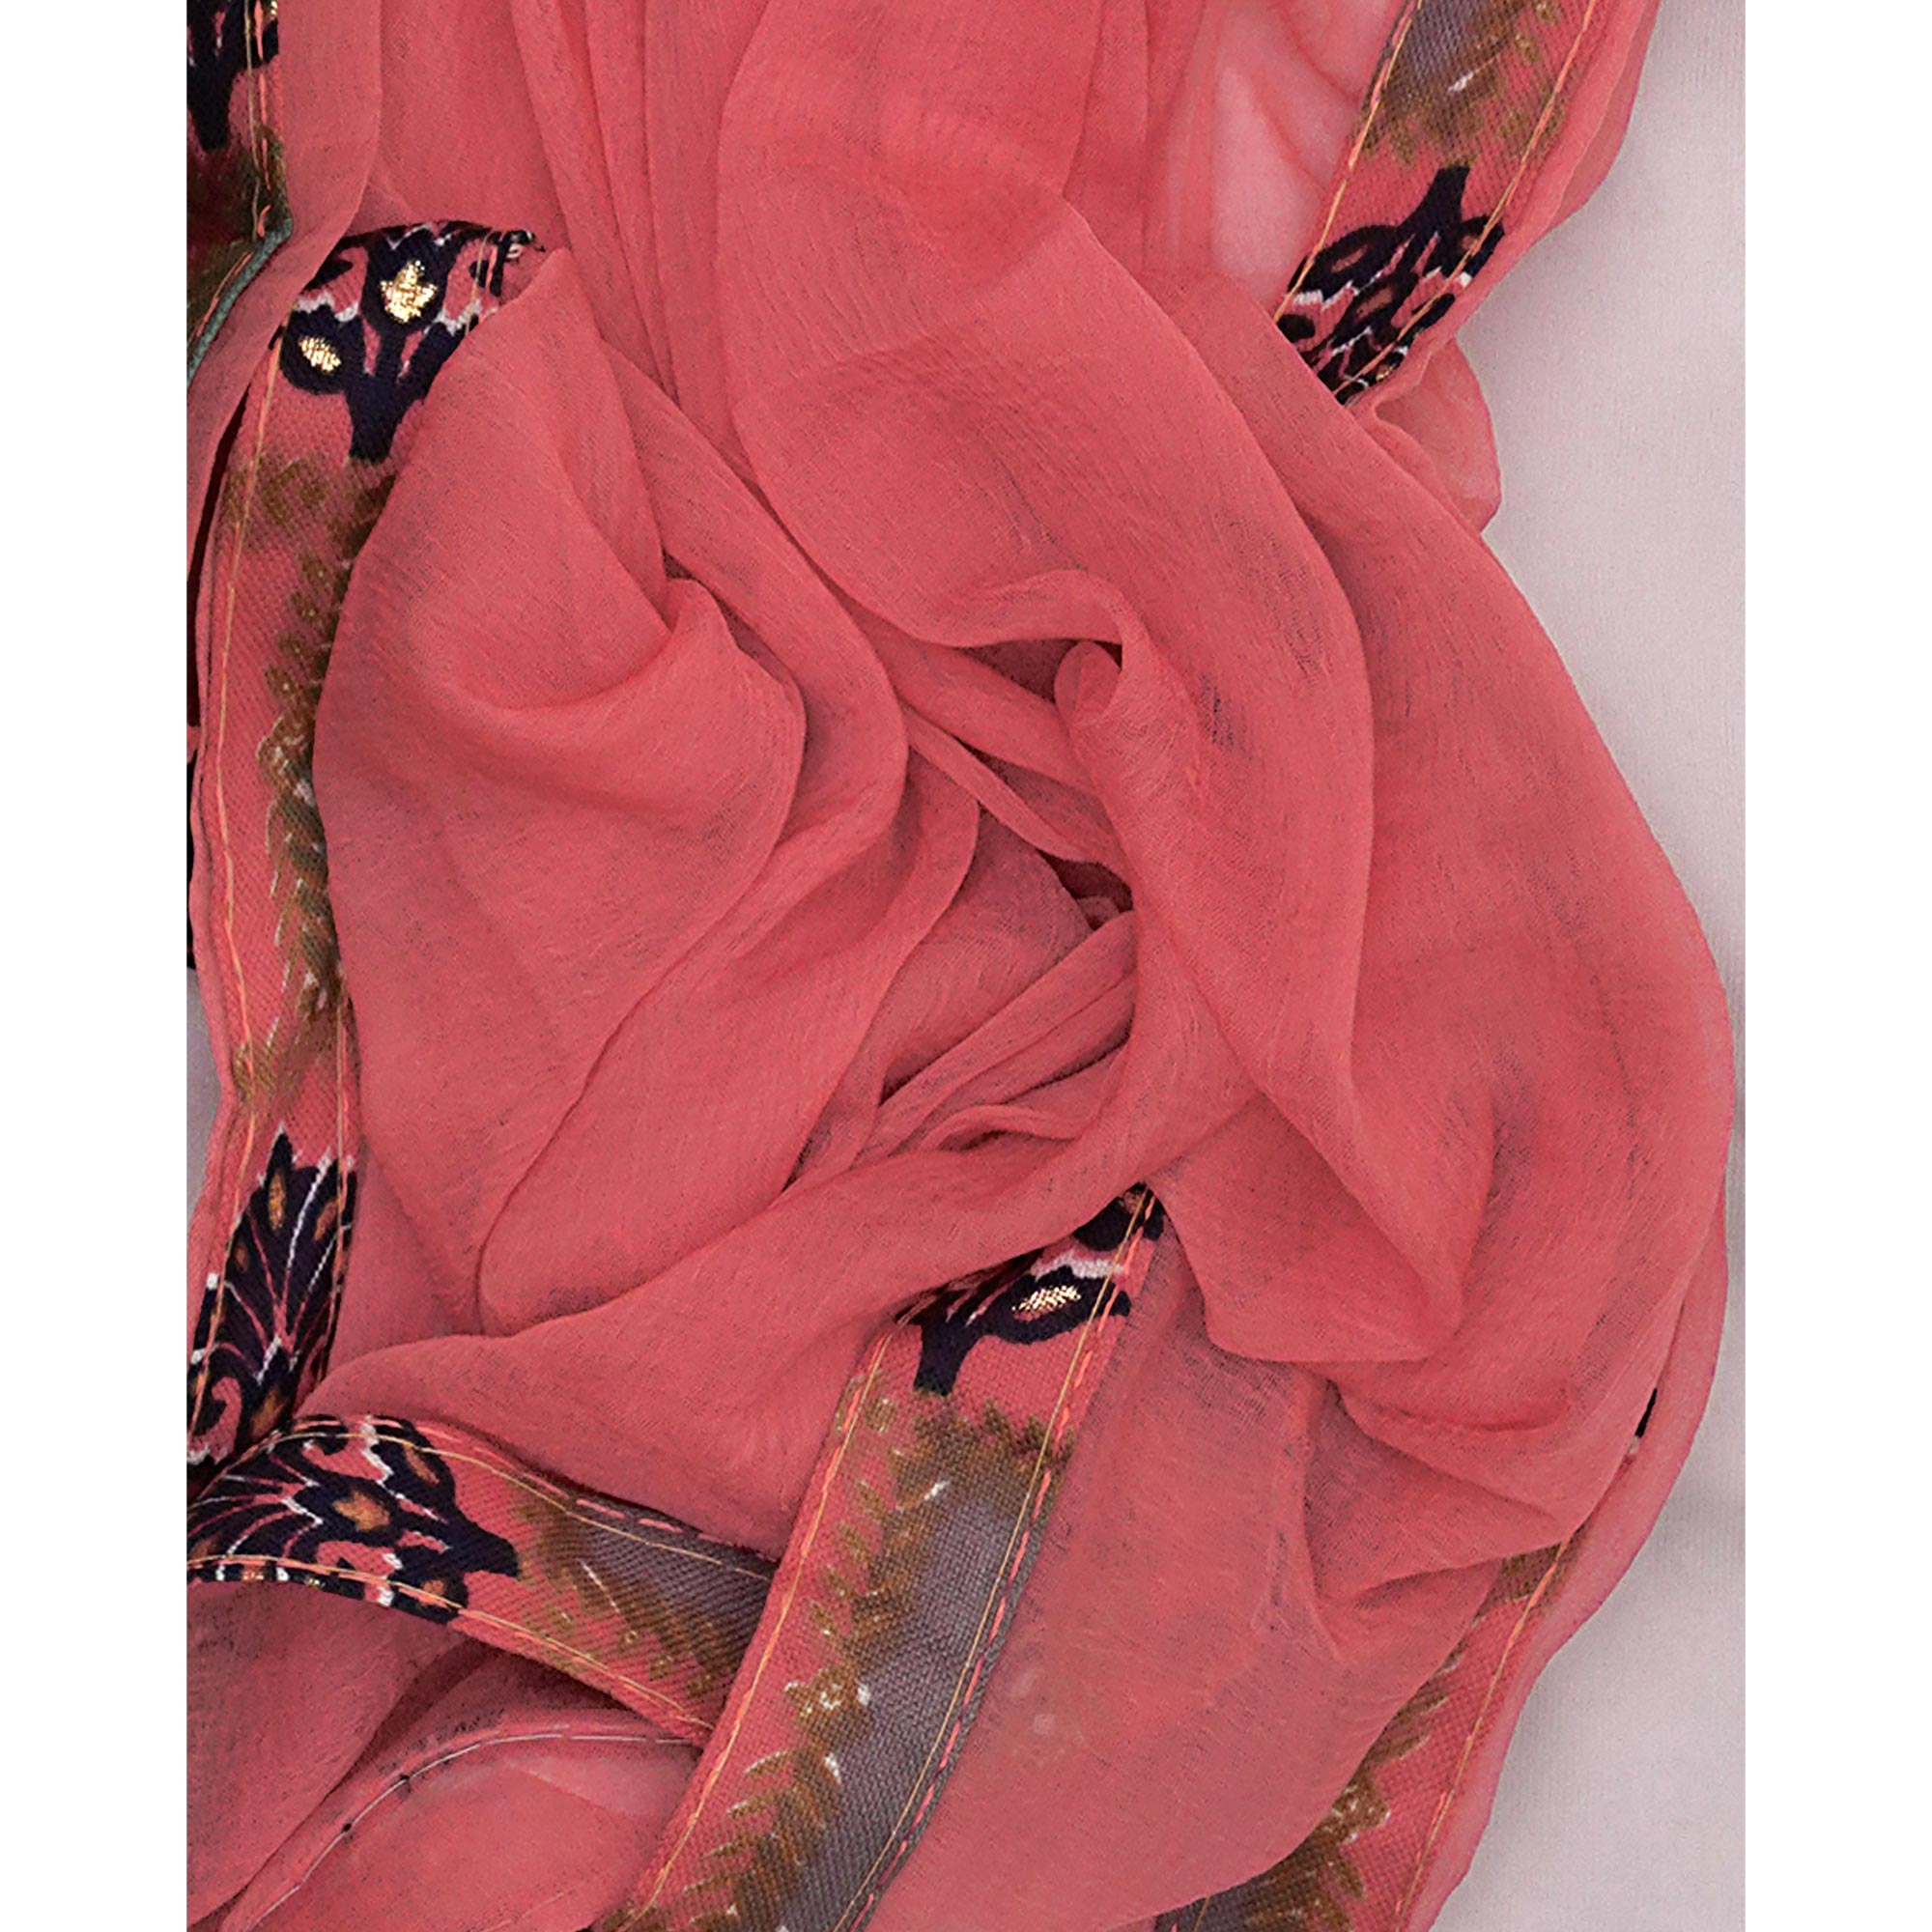 Gajari Pink Foil Printed Cotton Blend Dress Material